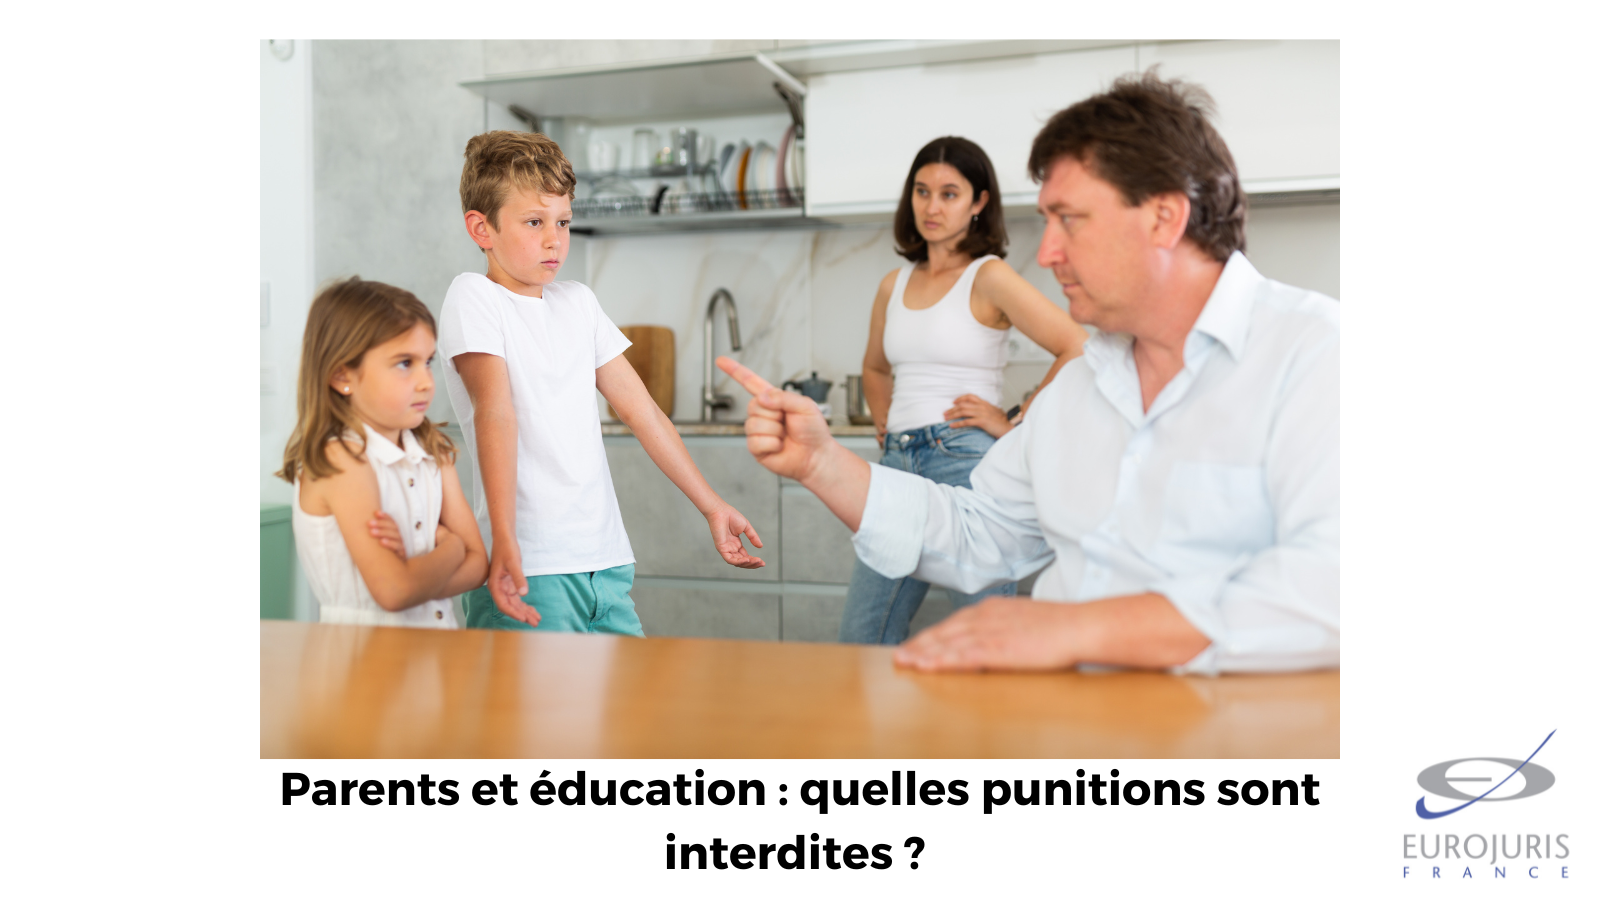 Parents et éducation des enfants : quelles punitions sont interdites ? 